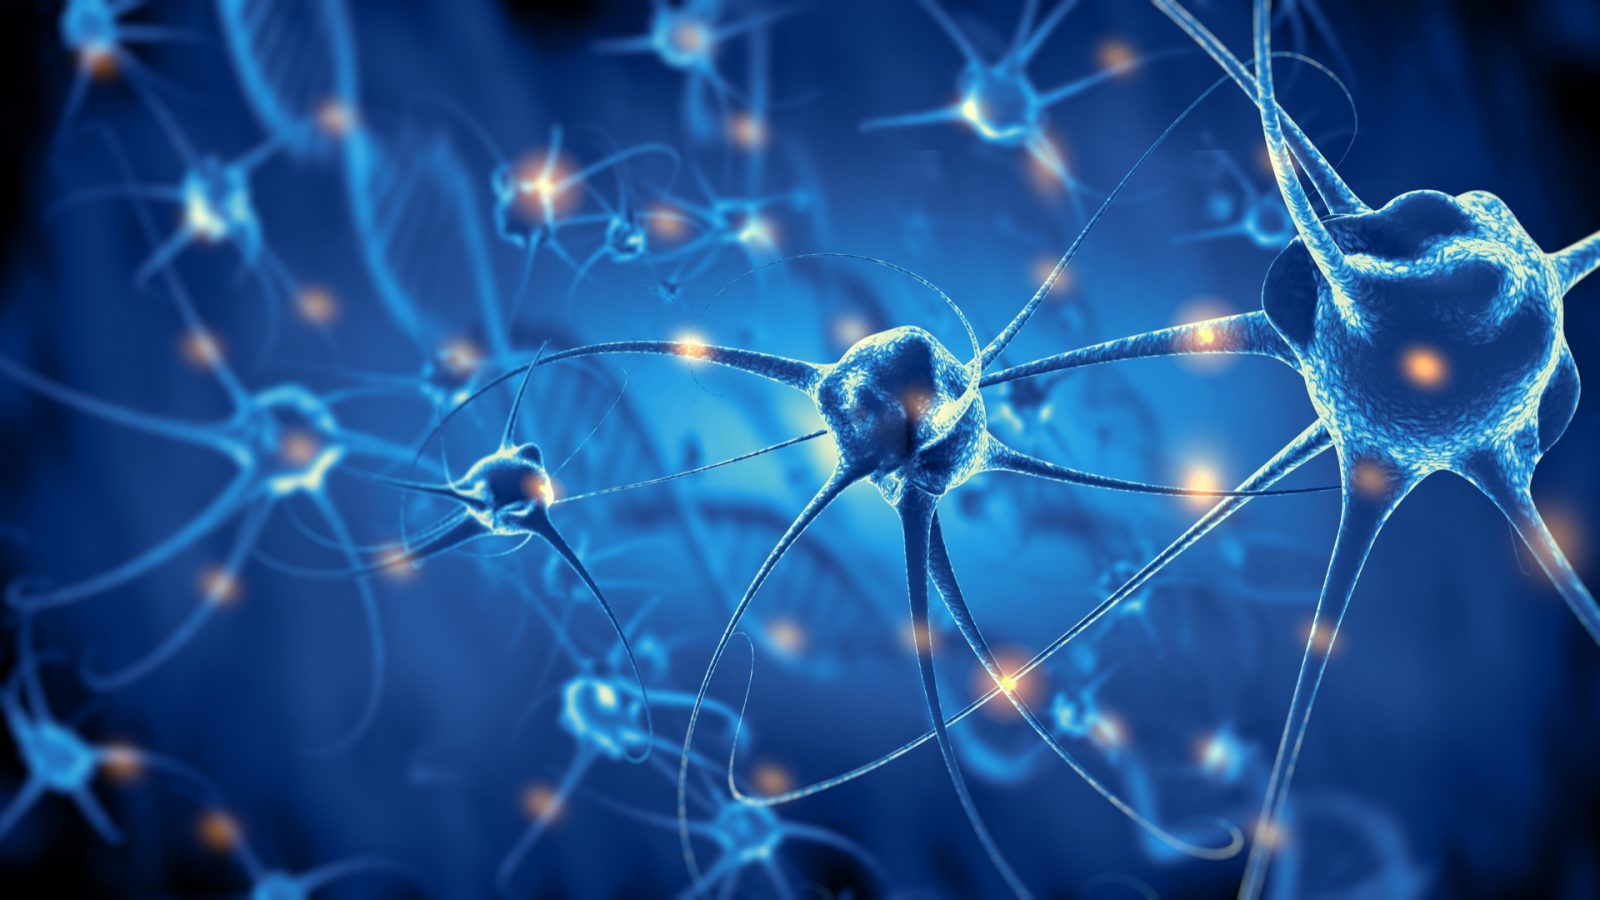 Фактор роста нервов (nerve growth factor, NGF) относится к белкам семейства нейротрофинов и участвует в росте, пролиферации, а также регенерации нейронов. NGF является многофункциональной молекулой